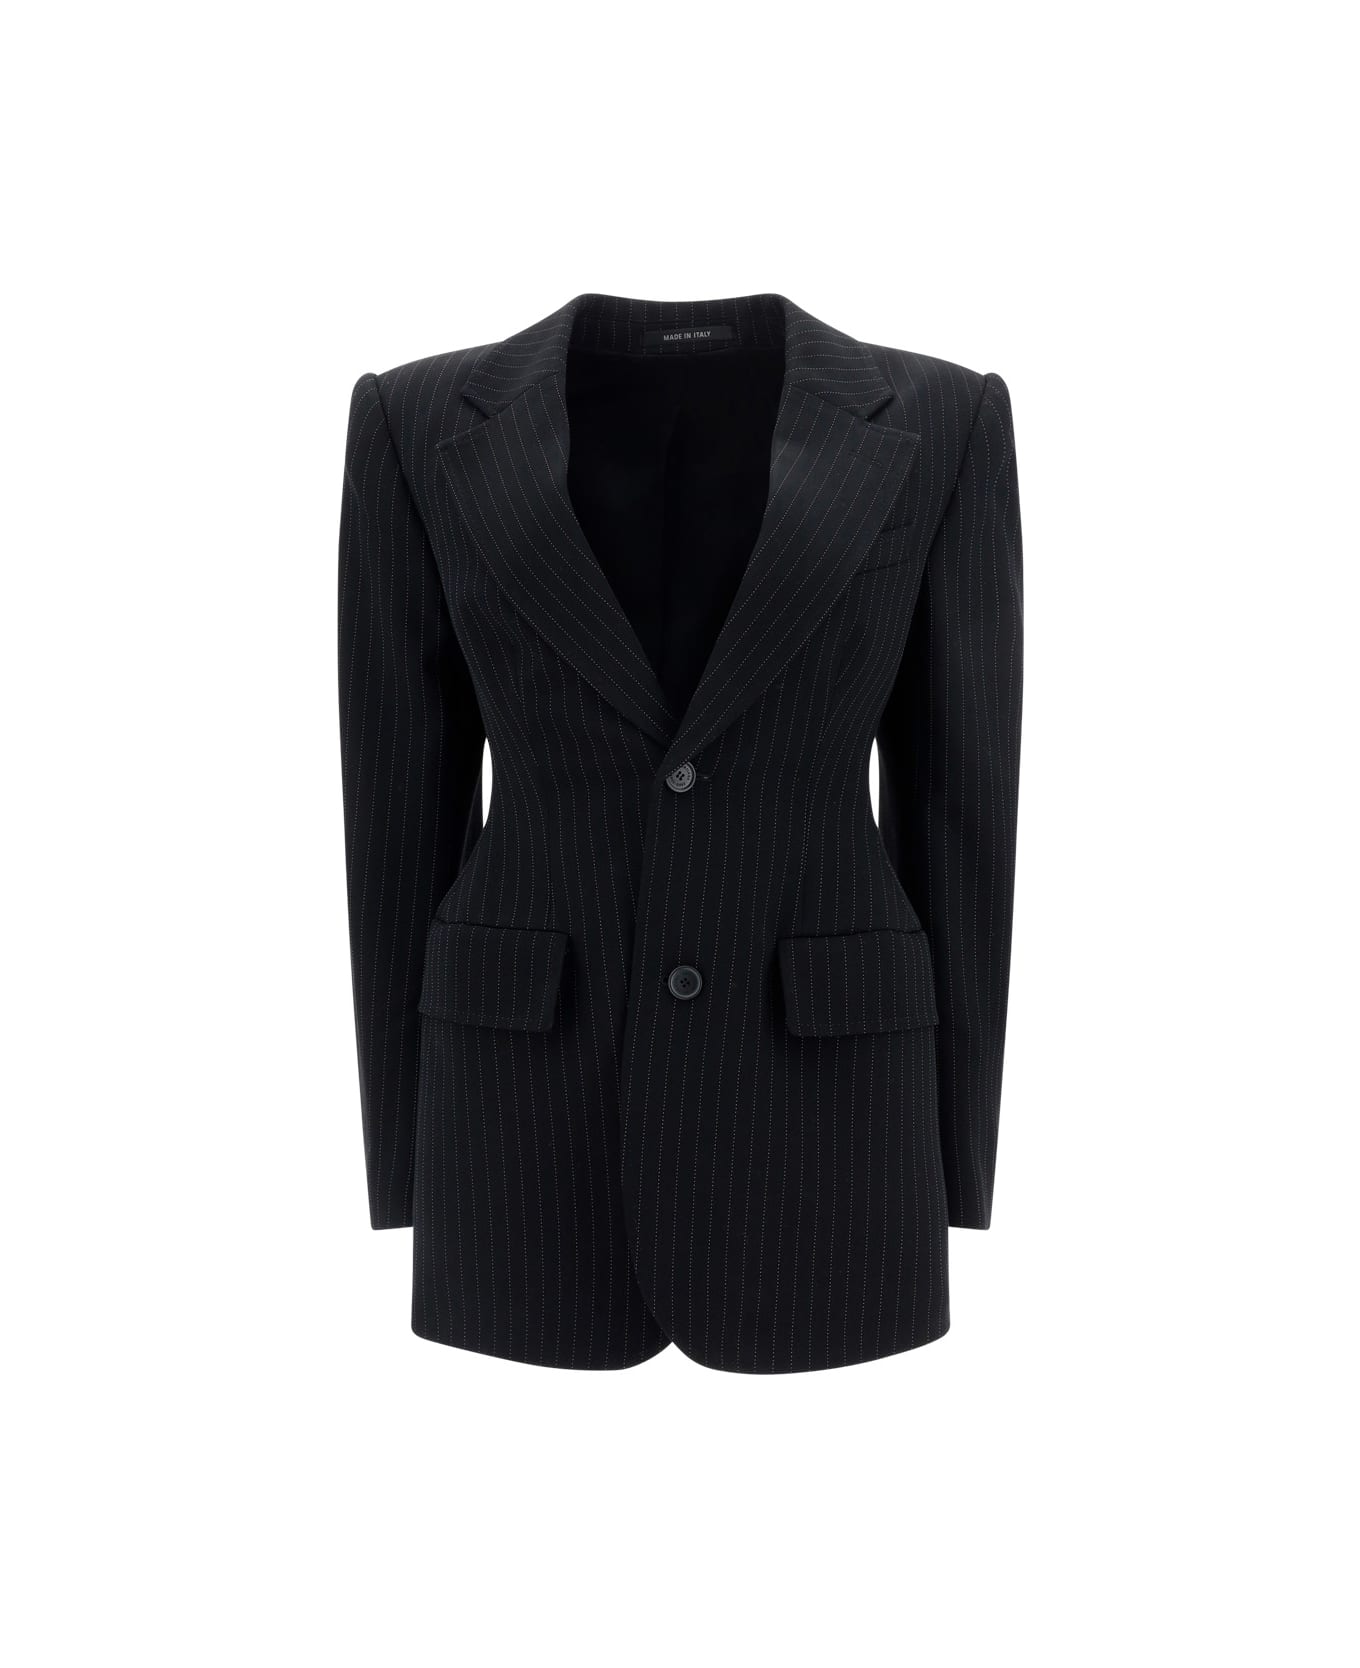 Balenciaga Blazer Jacket - Black/white